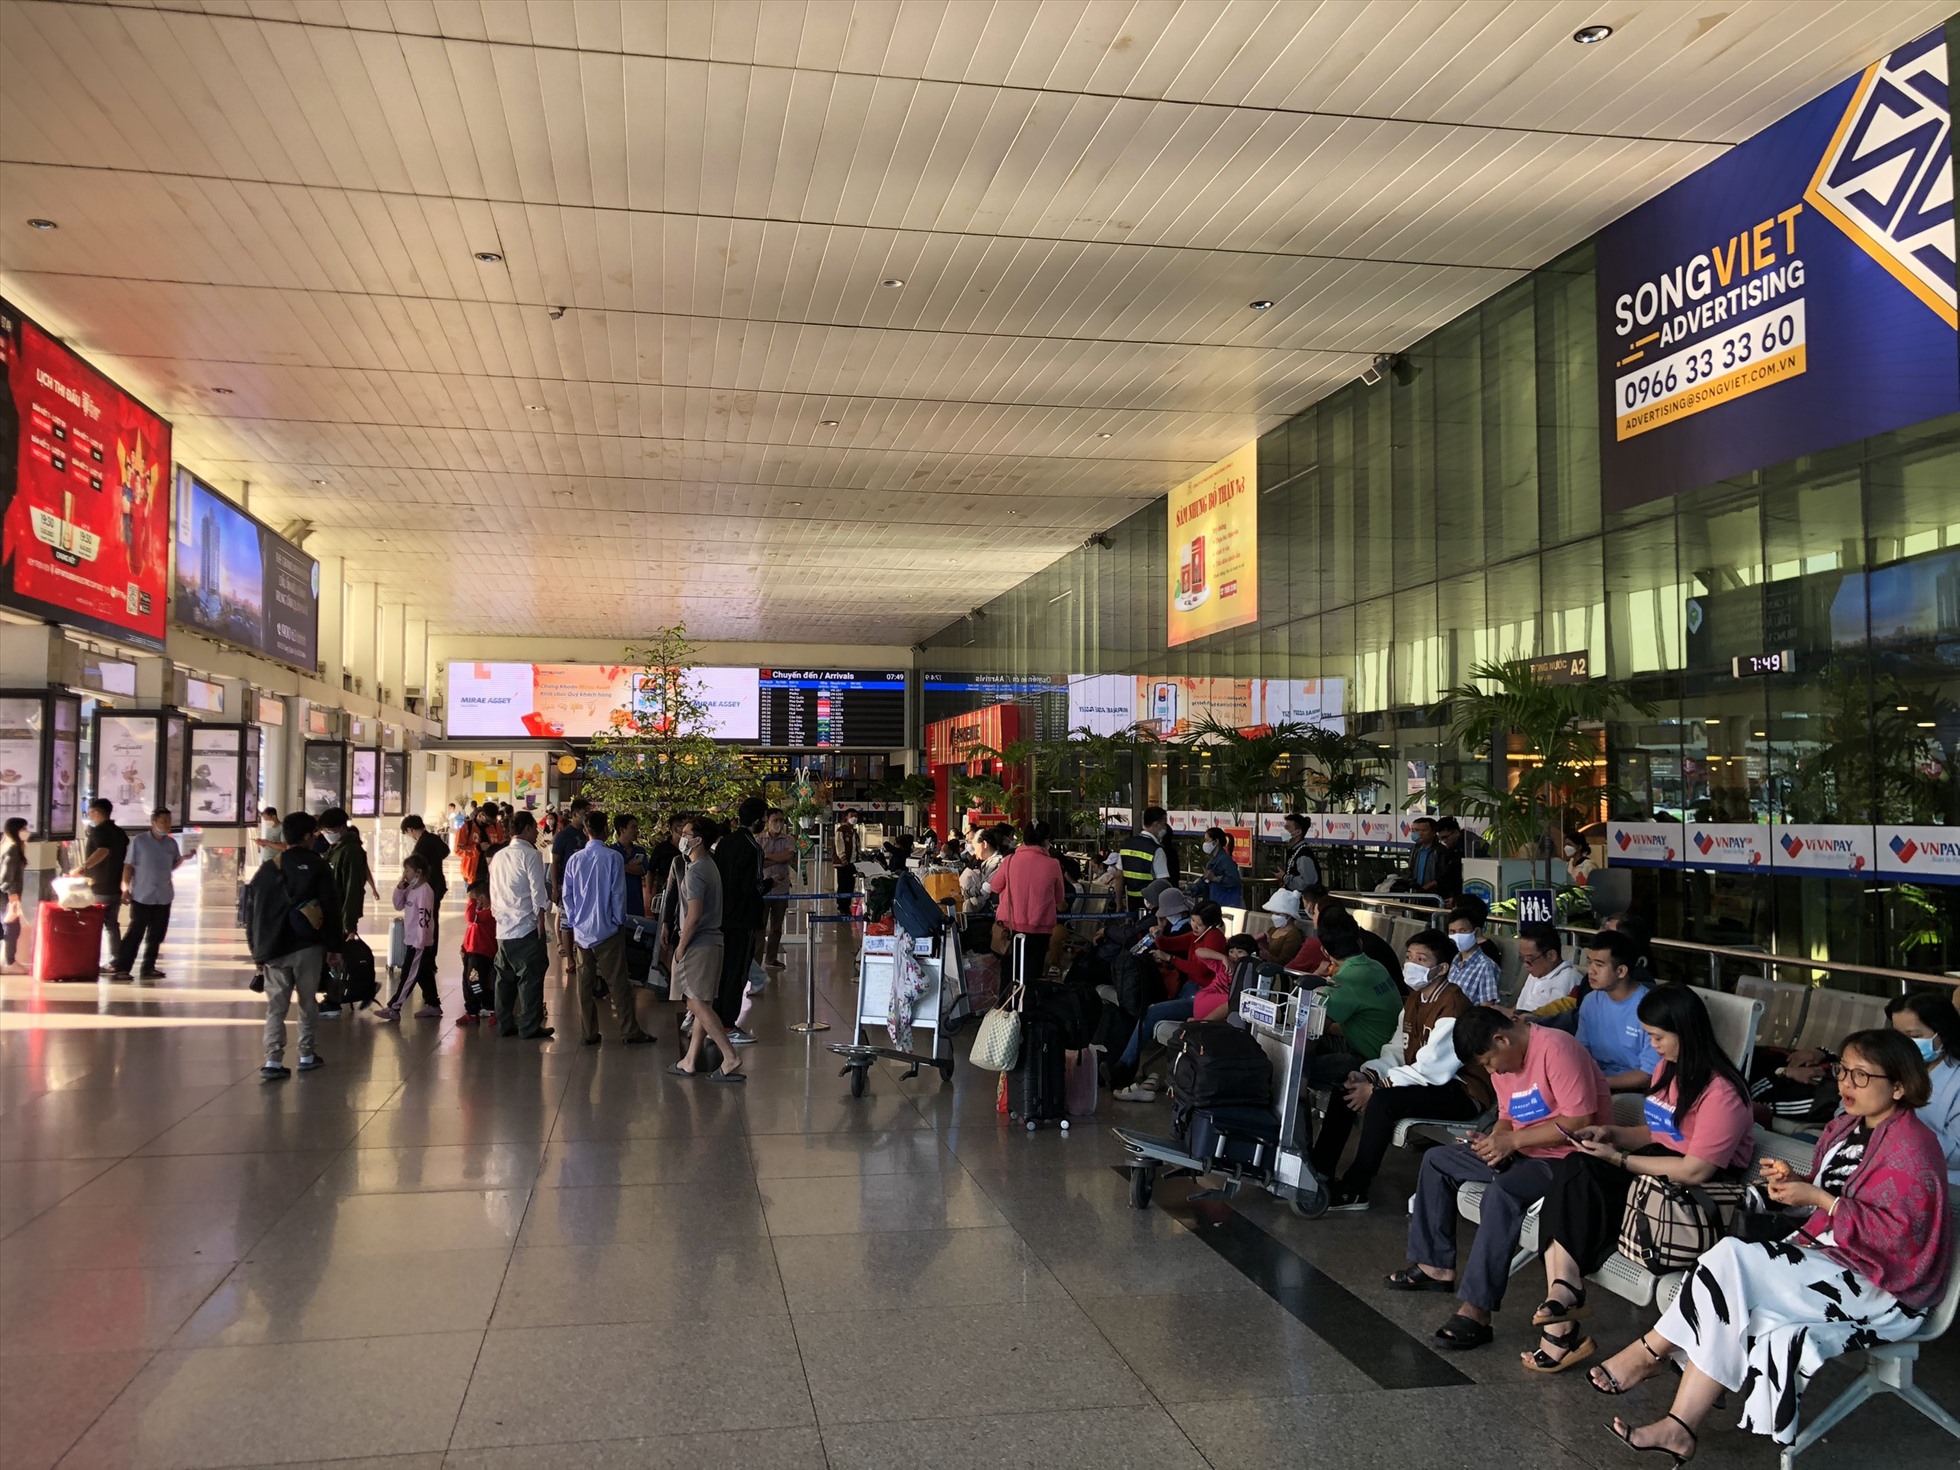 Theo Cảng hàng không quốc tế Tân Sơn Nhất, trong ngày 27-1 (mùng 6 tháng giêng), sân bay phục vụ 916 lượt cất/hạ cánh. Ước tính khách qua sân bay đạt 149.177 người. Trong đó, khách đi hơn 58.000, khách đến gần 91.000.